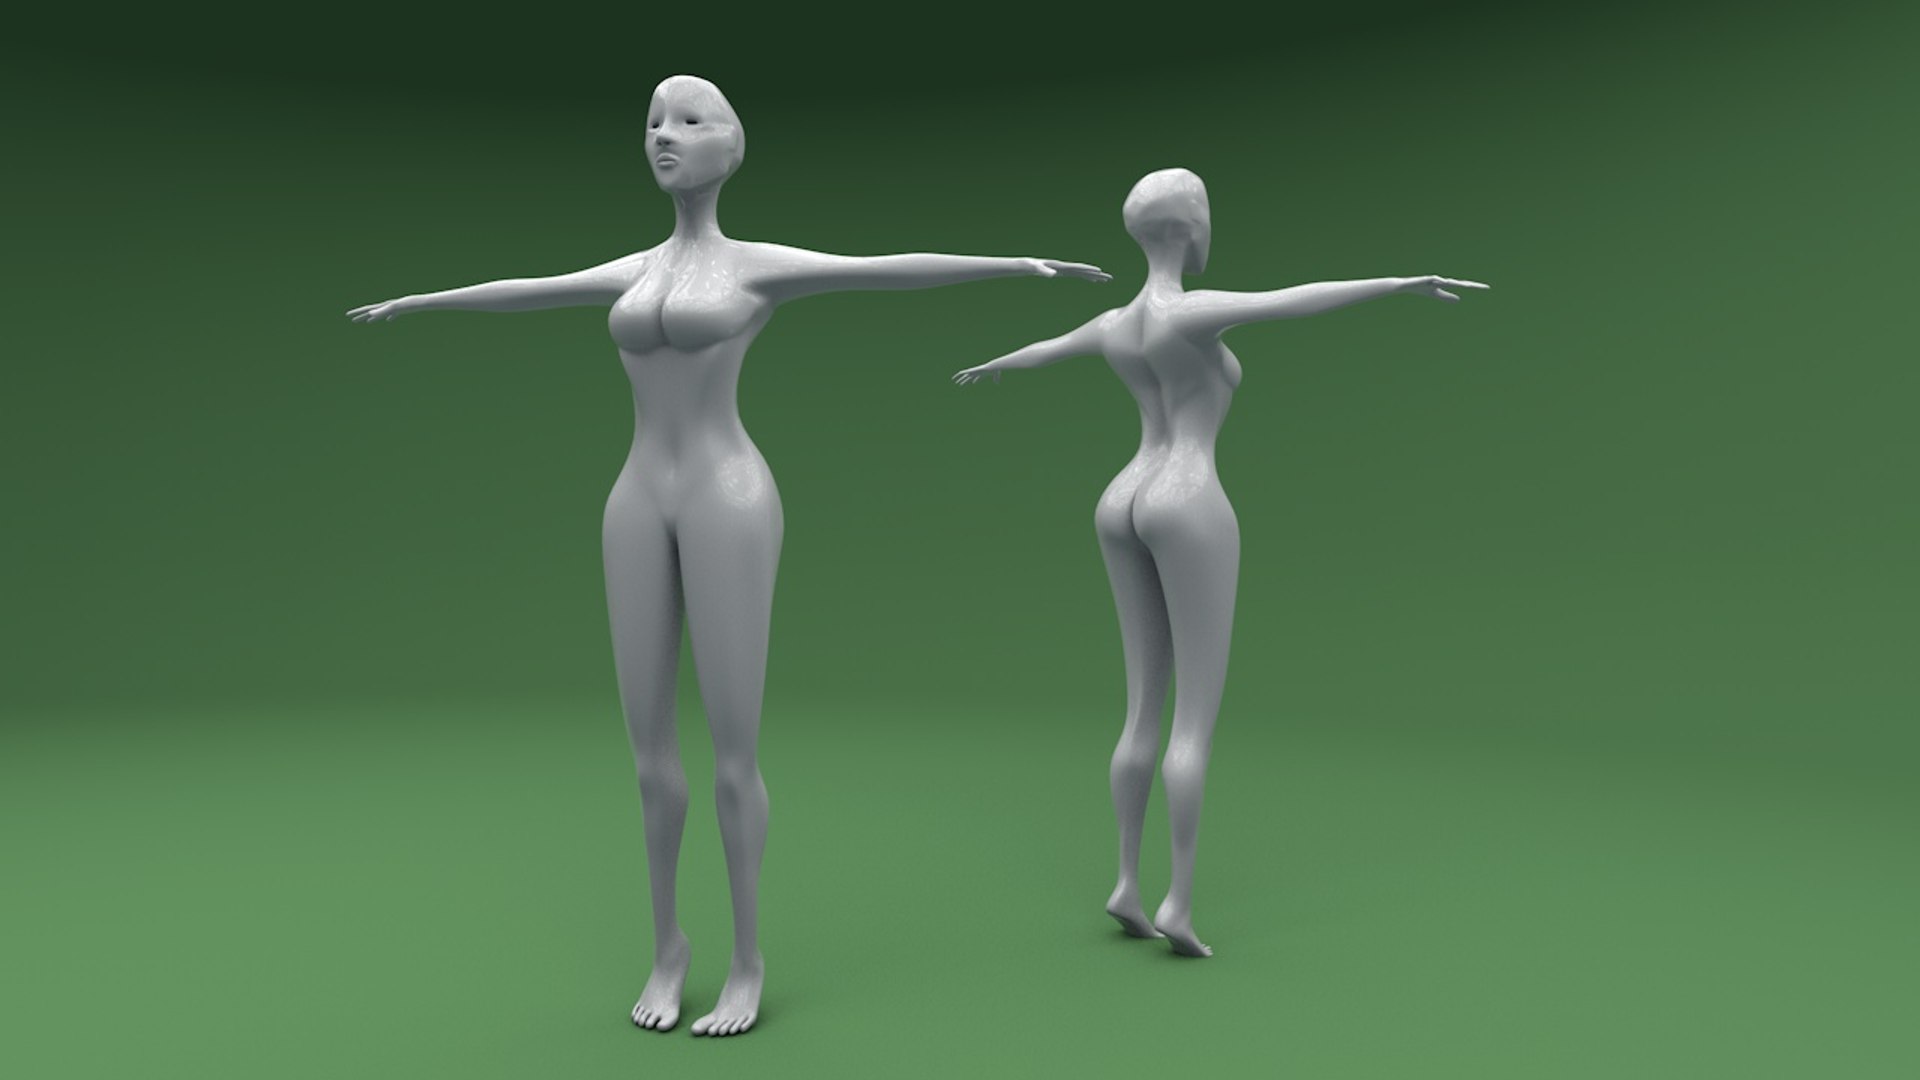 3d Model Of Female Body Meshes